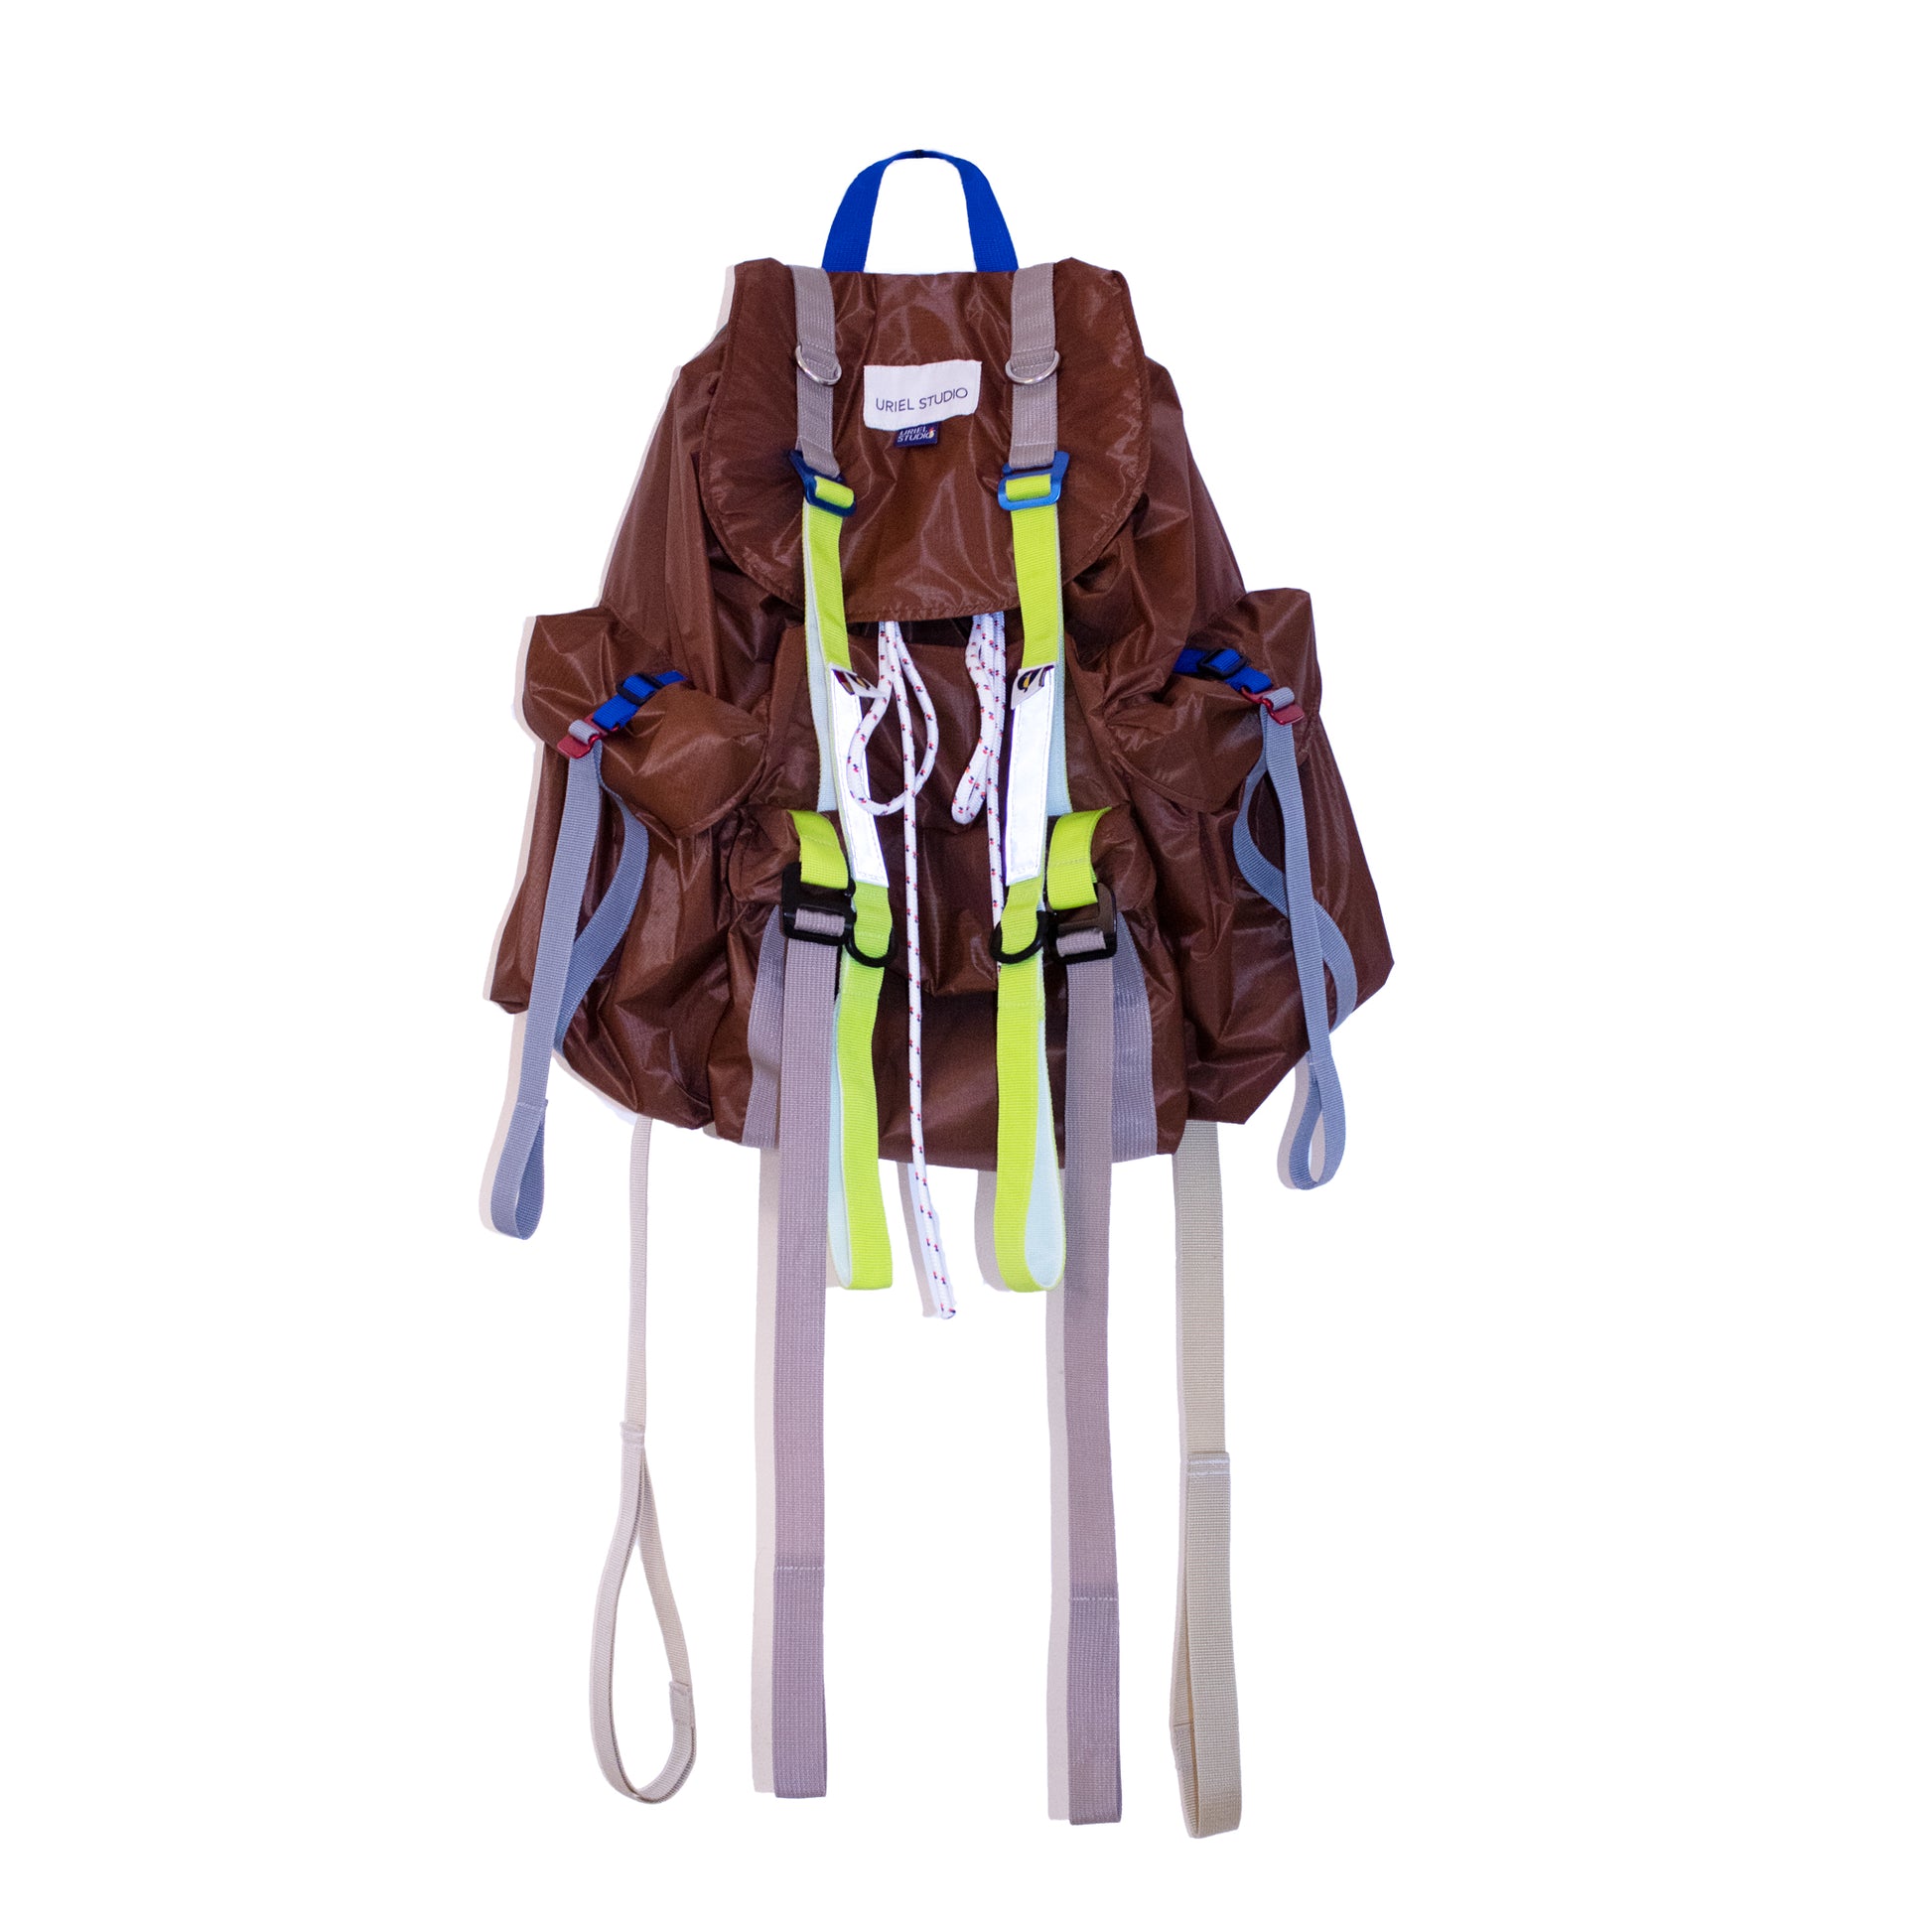 Nexus Oversized Backpack In Light Weight Brown Ripstop